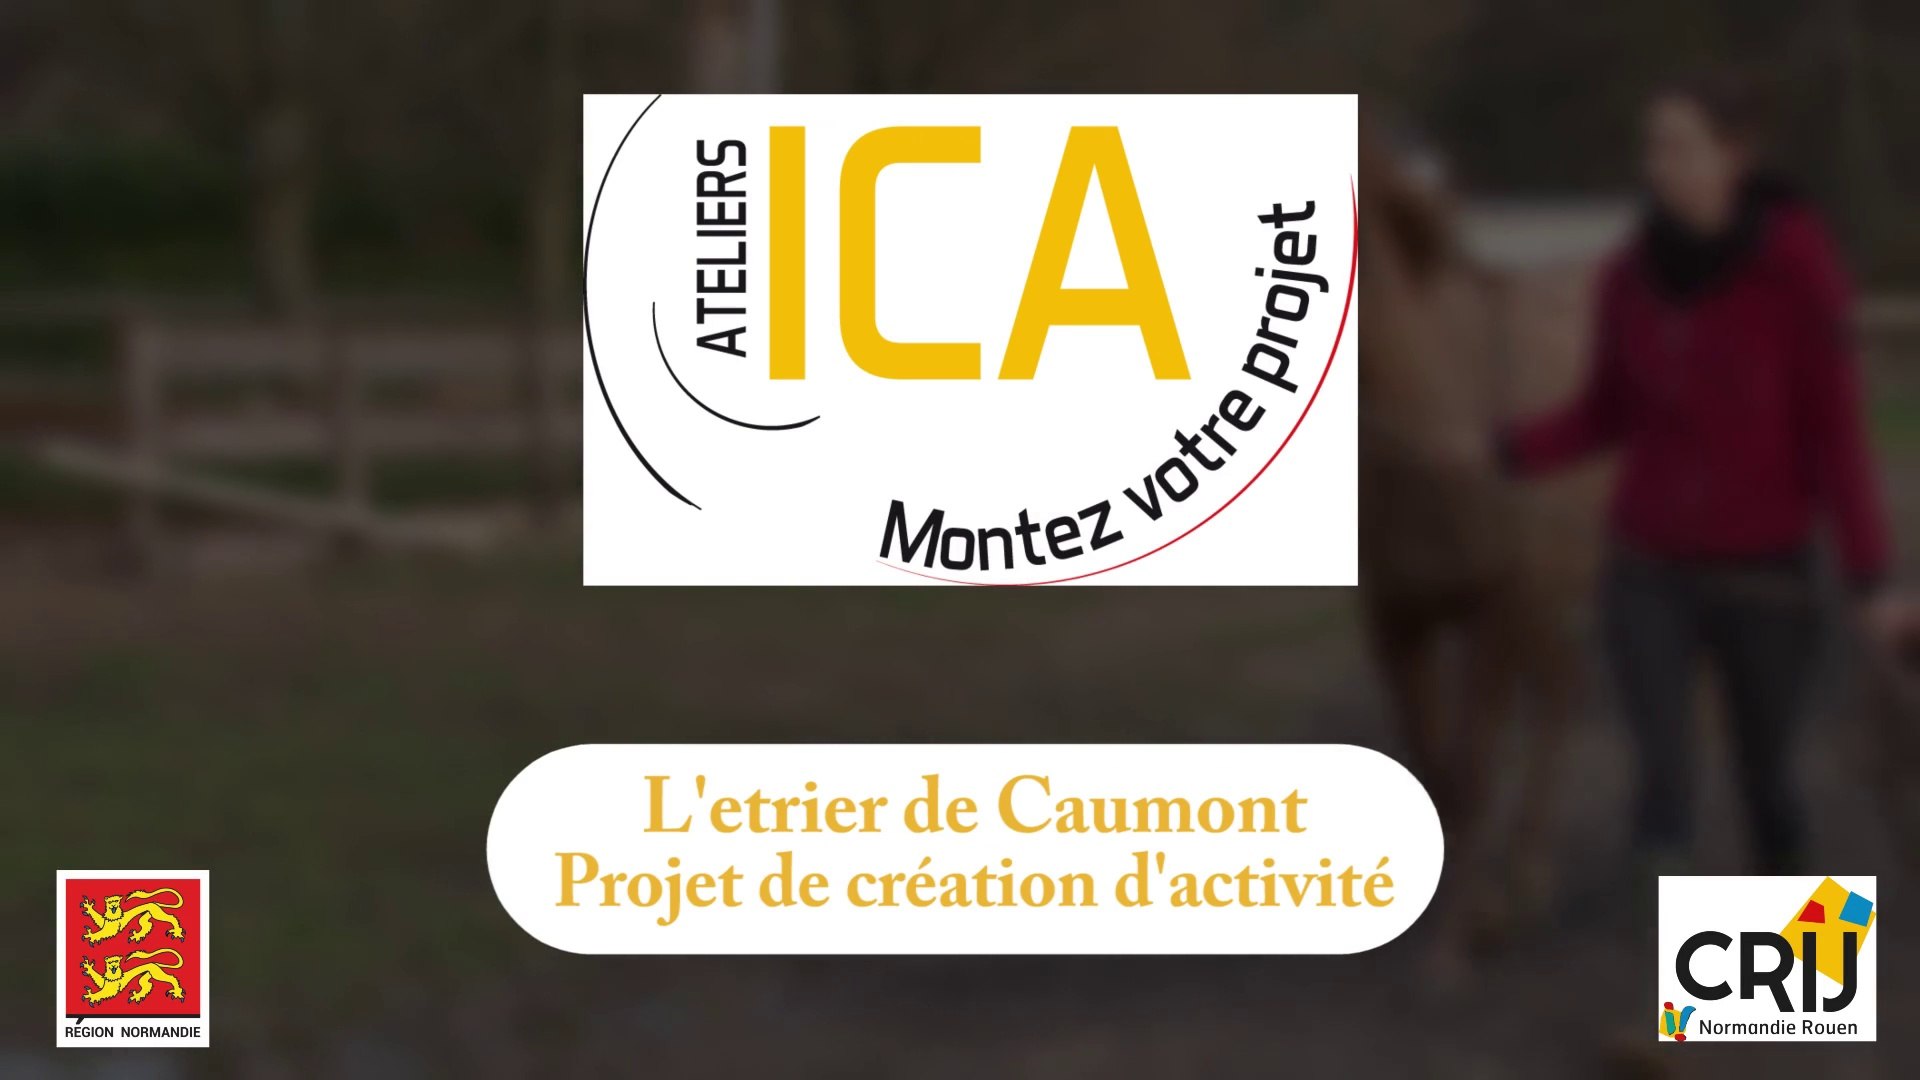 Reportage ICA - Monter son projet : "L'etrier de Caumont" - Vidéo  Dailymotion